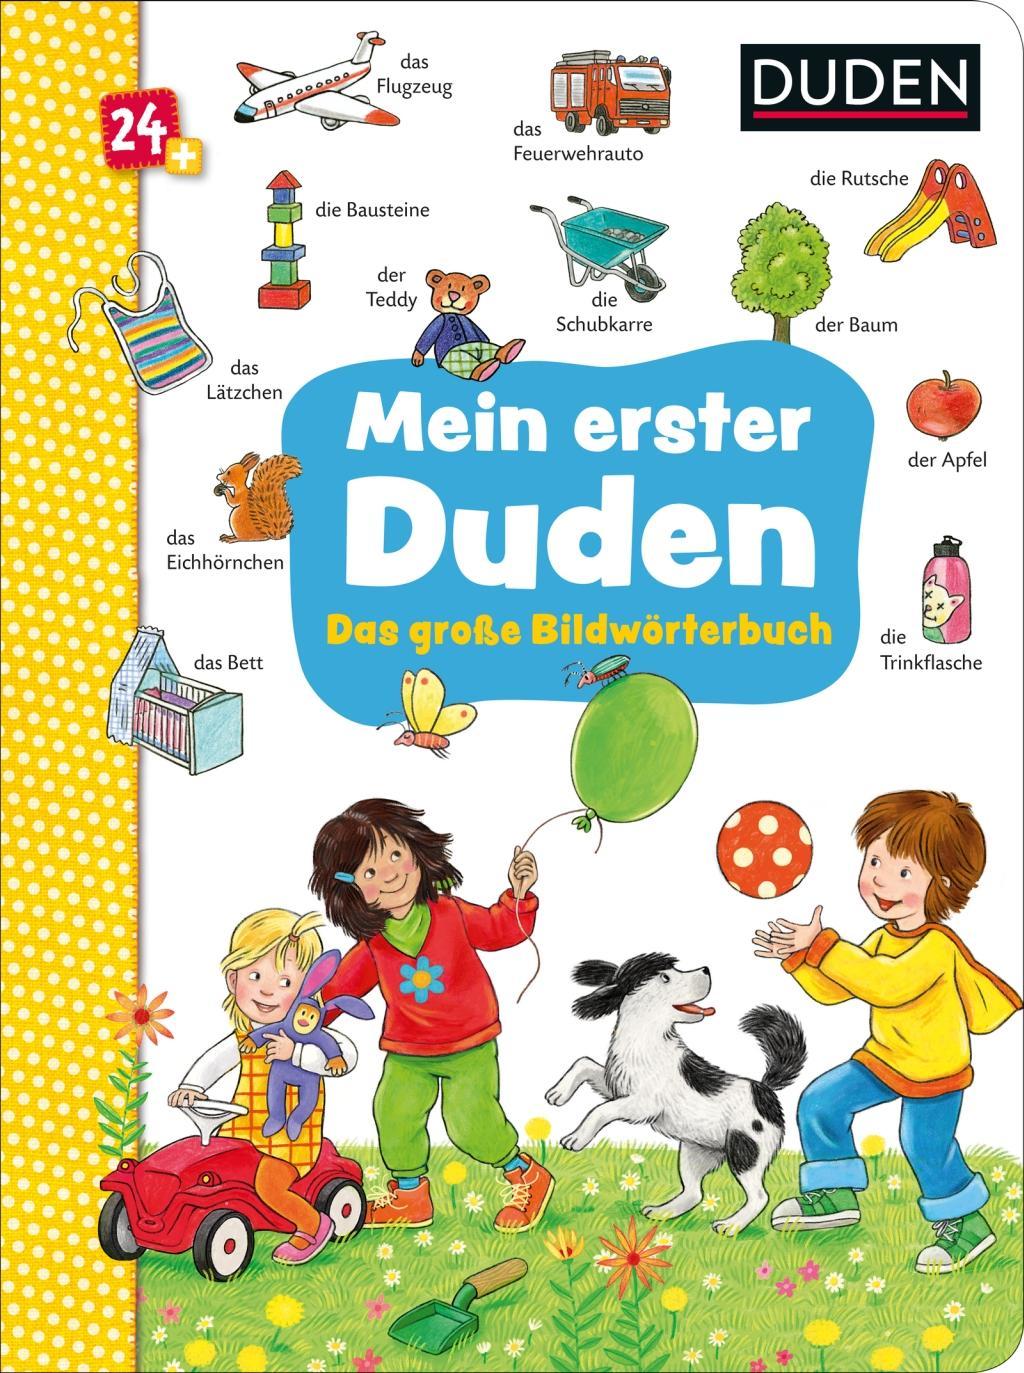 Knjiga Duden 24+: Mein erster Duden. Das große Bildwörterbuch 